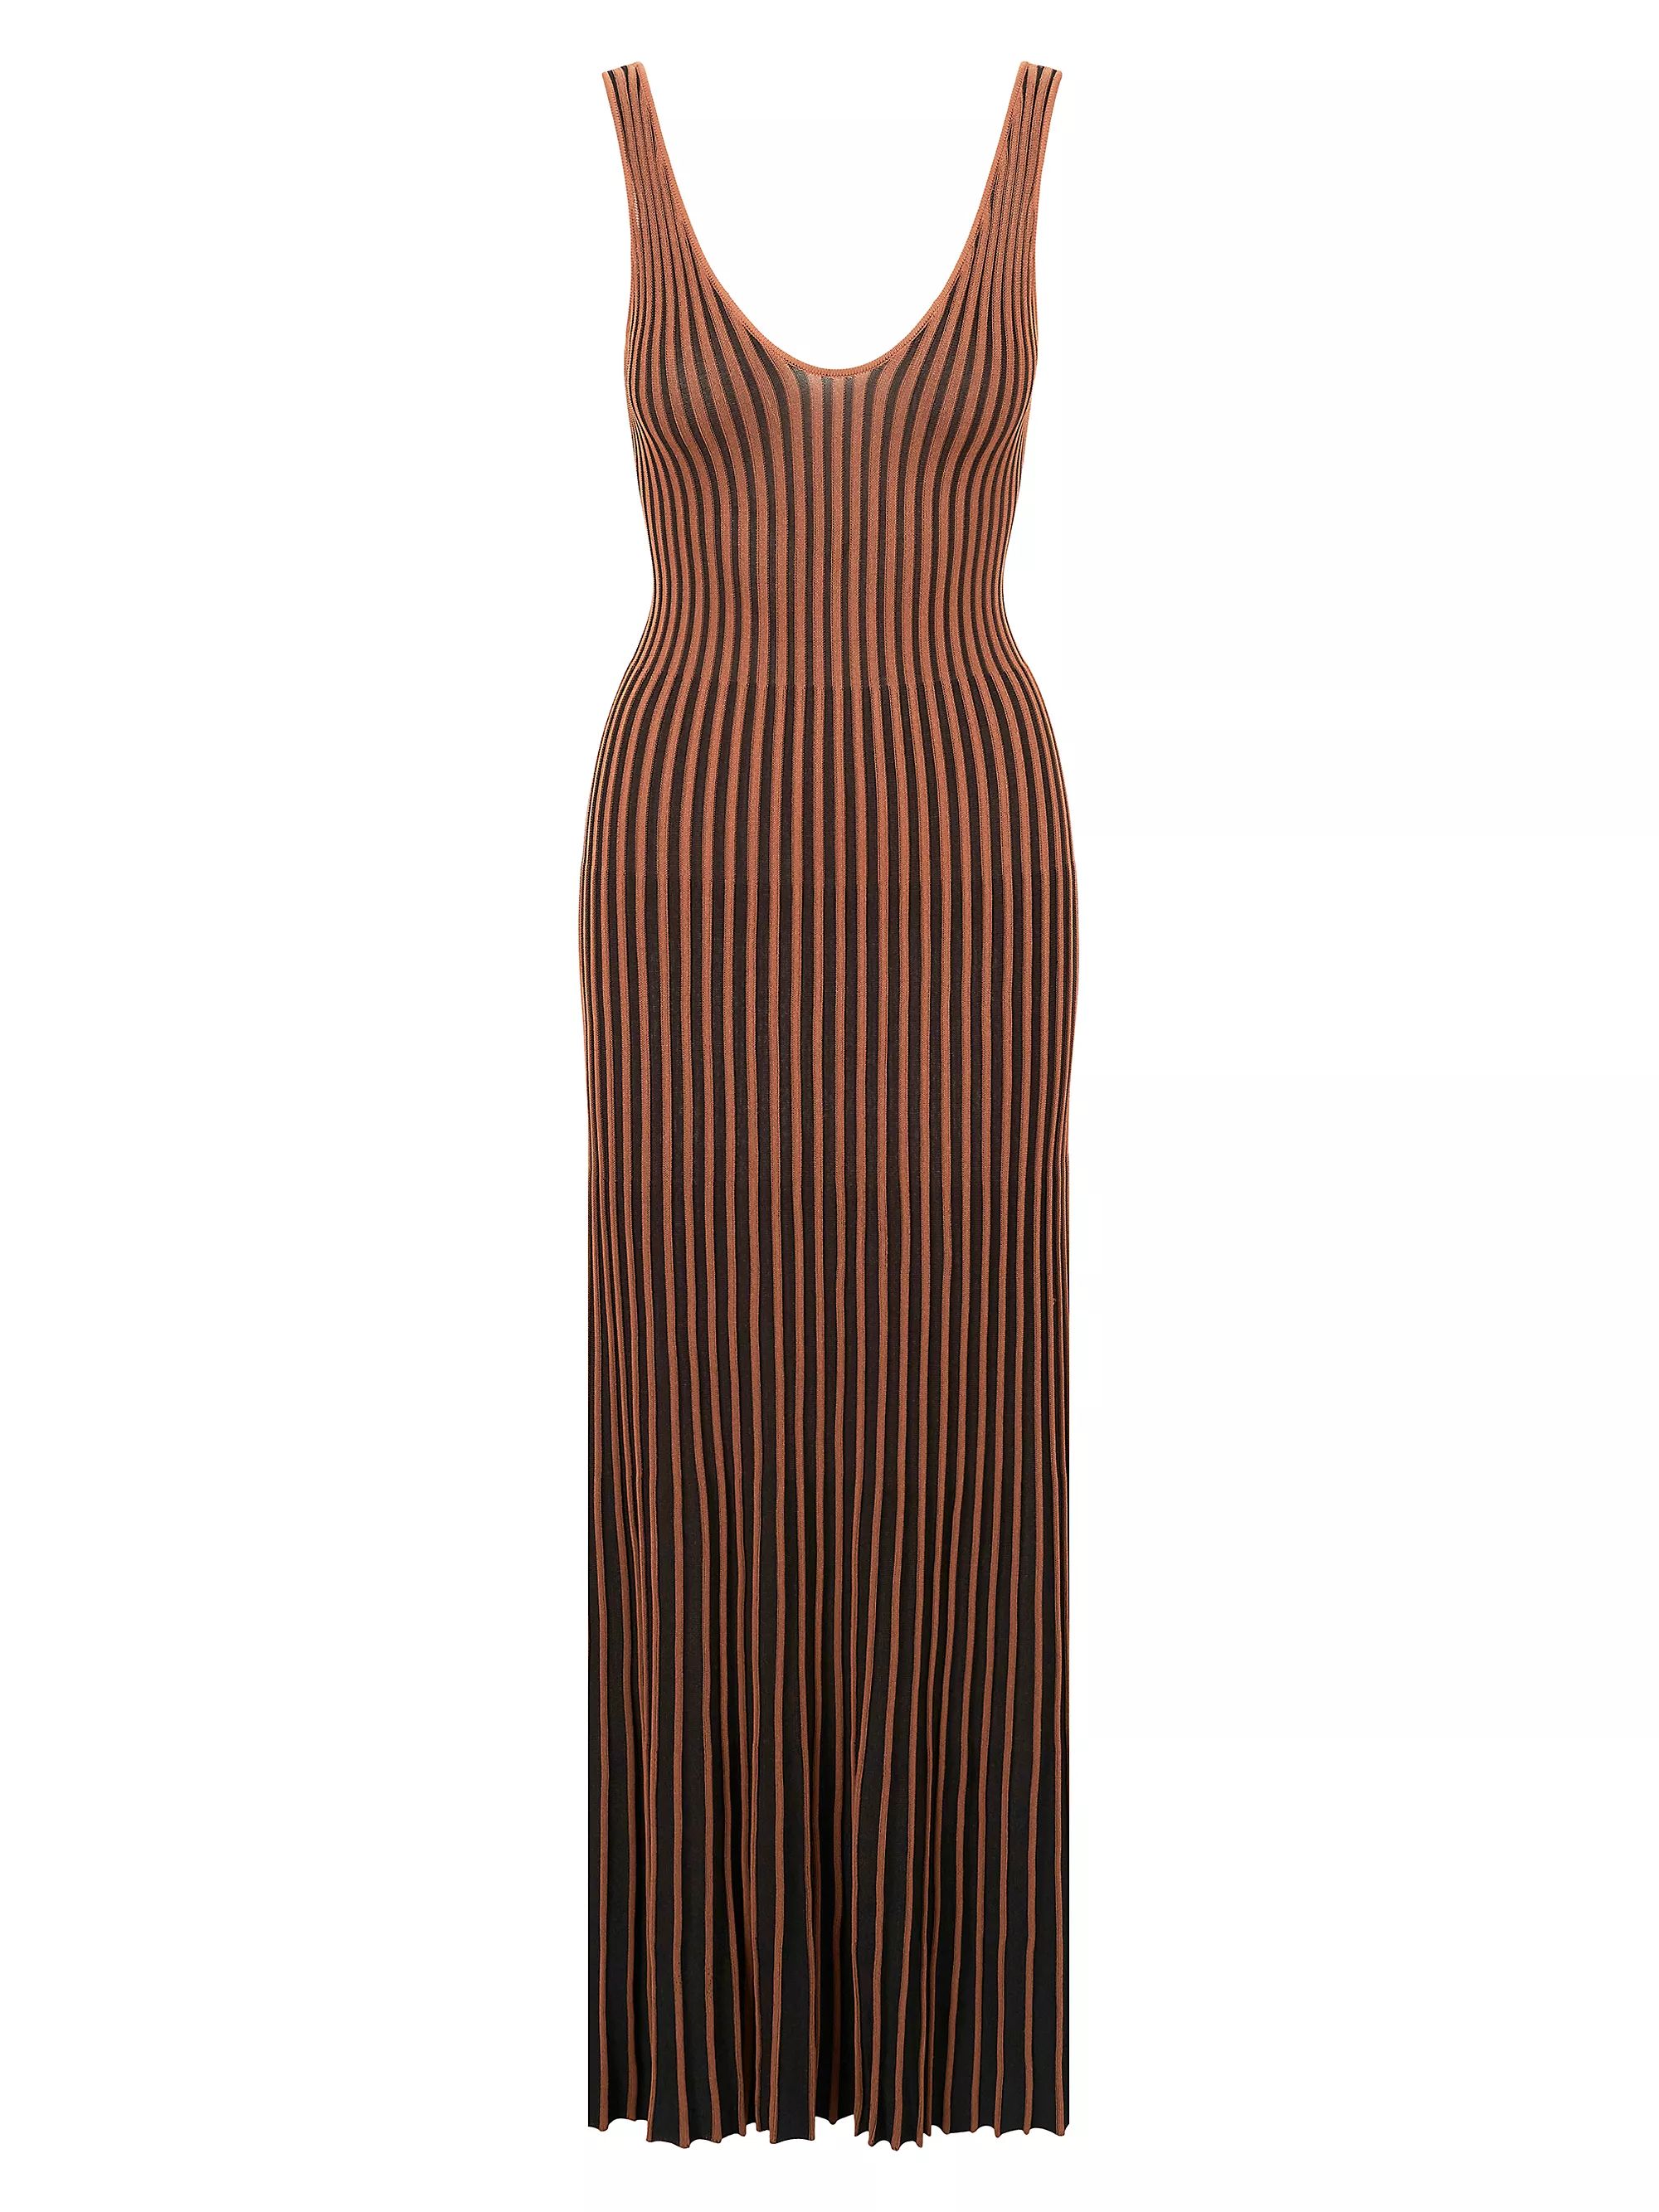 Claretta Striped Knit Maxi Dress | Saks Fifth Avenue